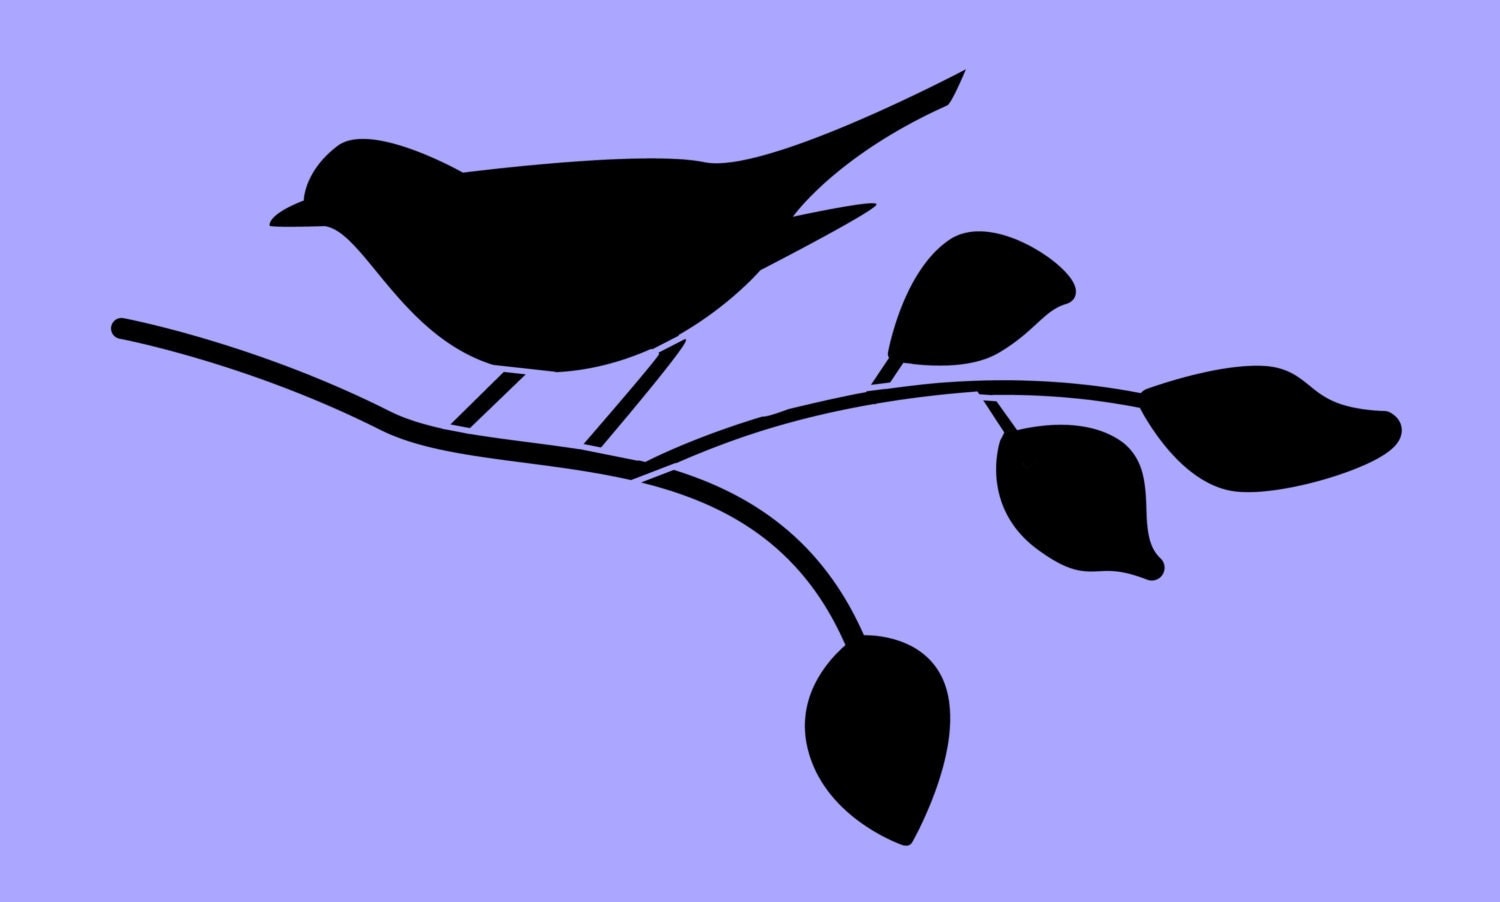 STENCIL Bird on Branch Silhouette 8x4.8 by ArtisticStencils